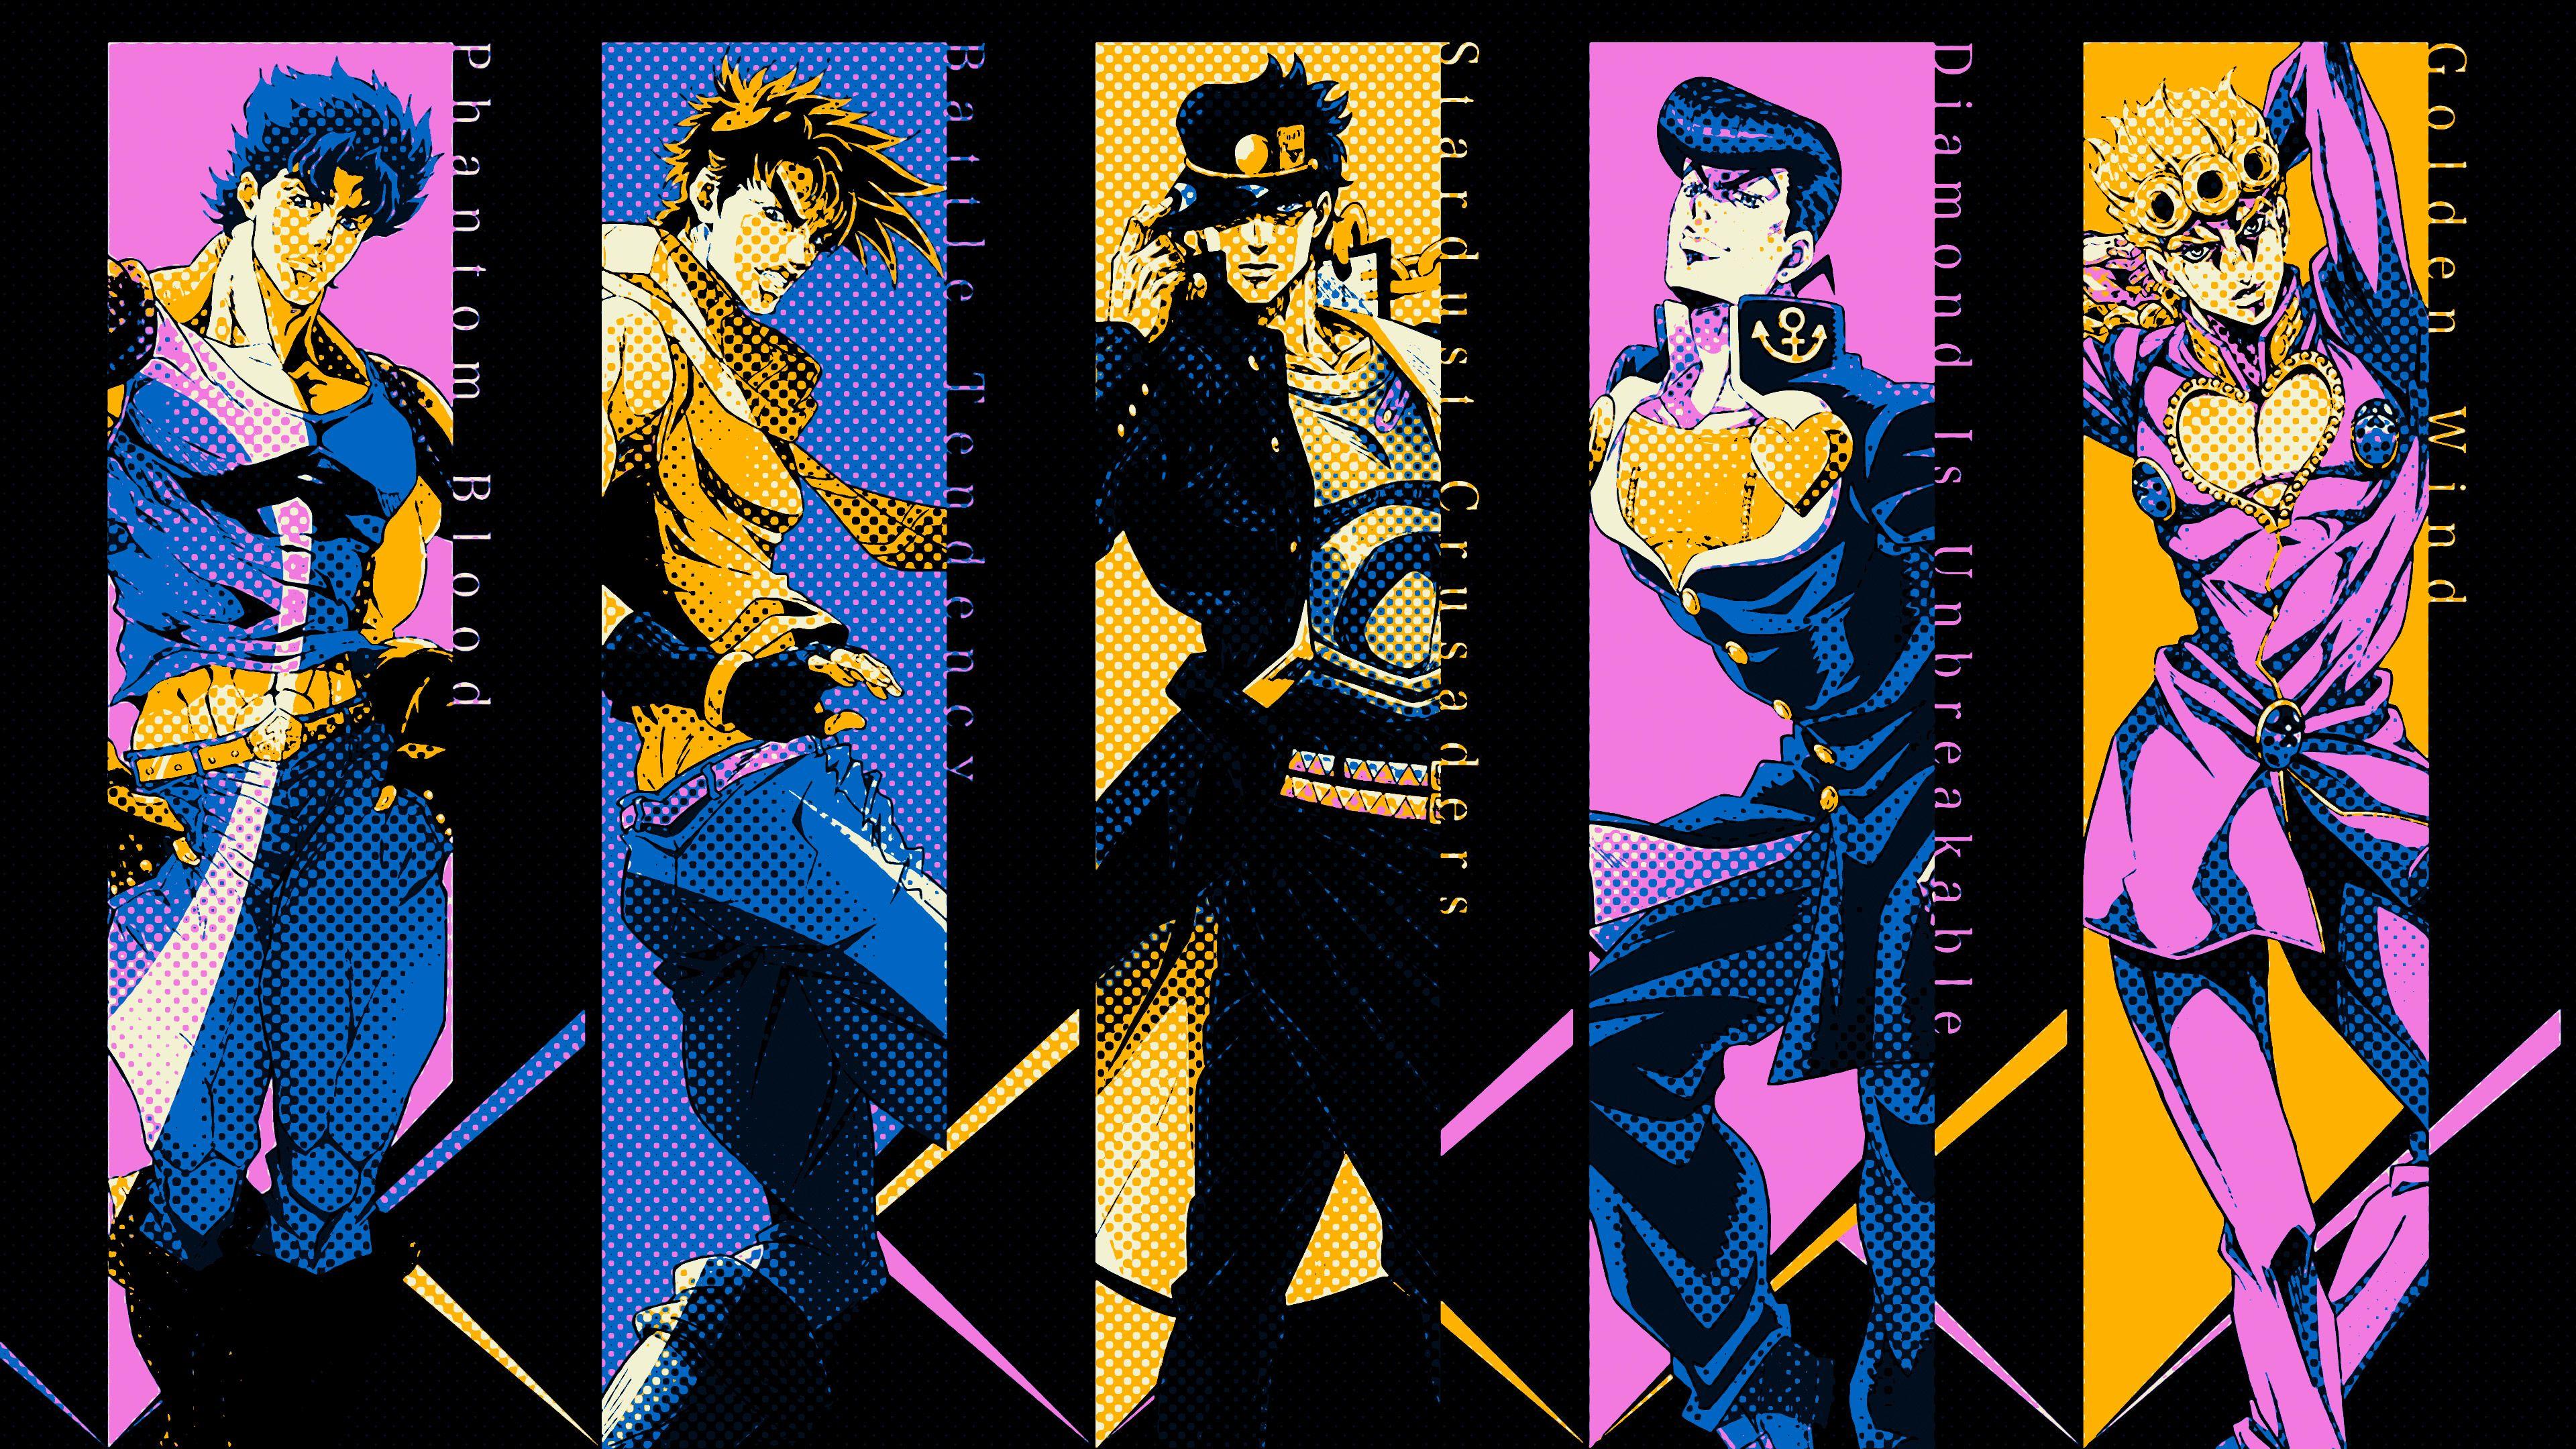 HD wallpaper: Anime, Jojo's Bizarre Adventure, Dio Brando, Jotaro Kujo |  Wallpaper Flare